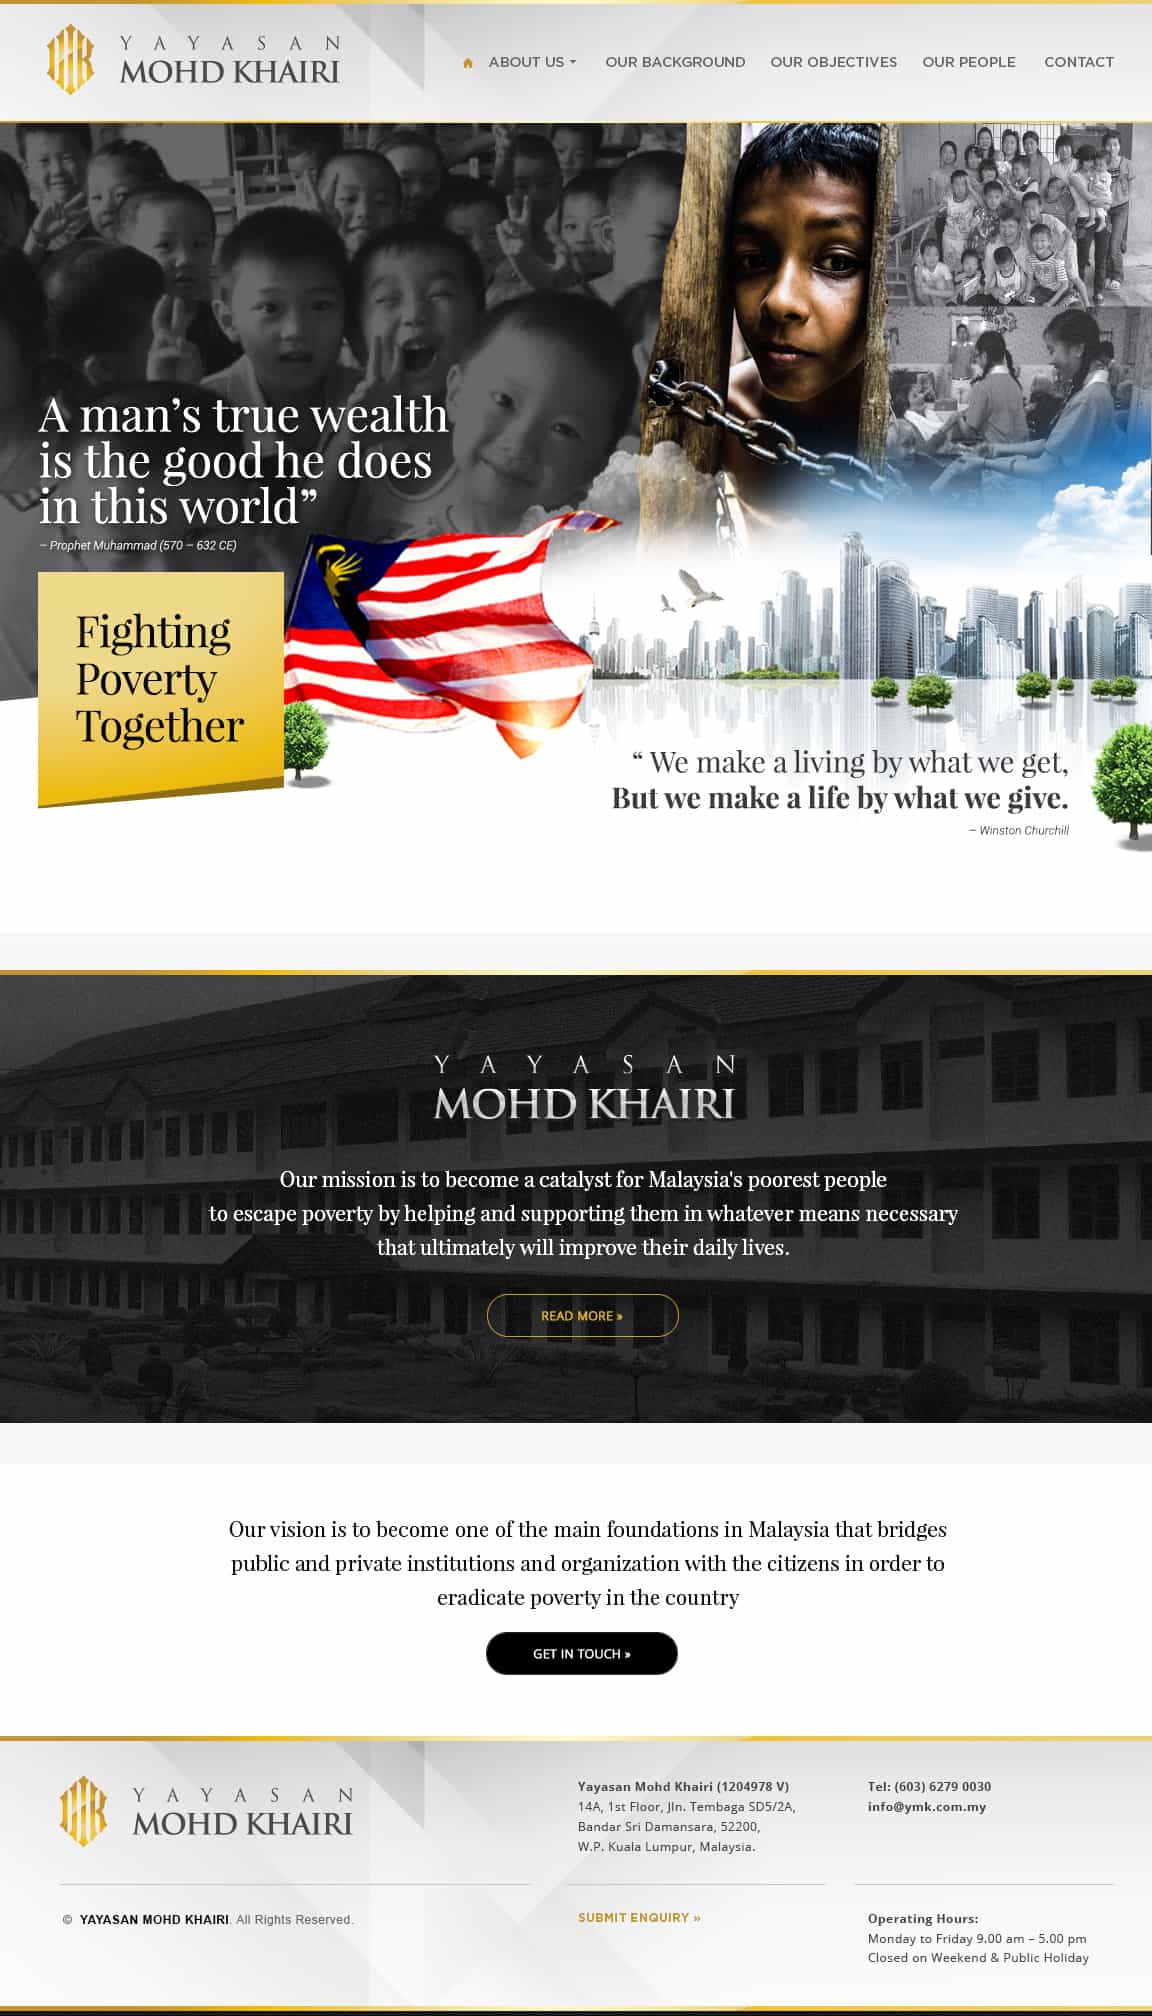 Yayasan Mohd Khairi